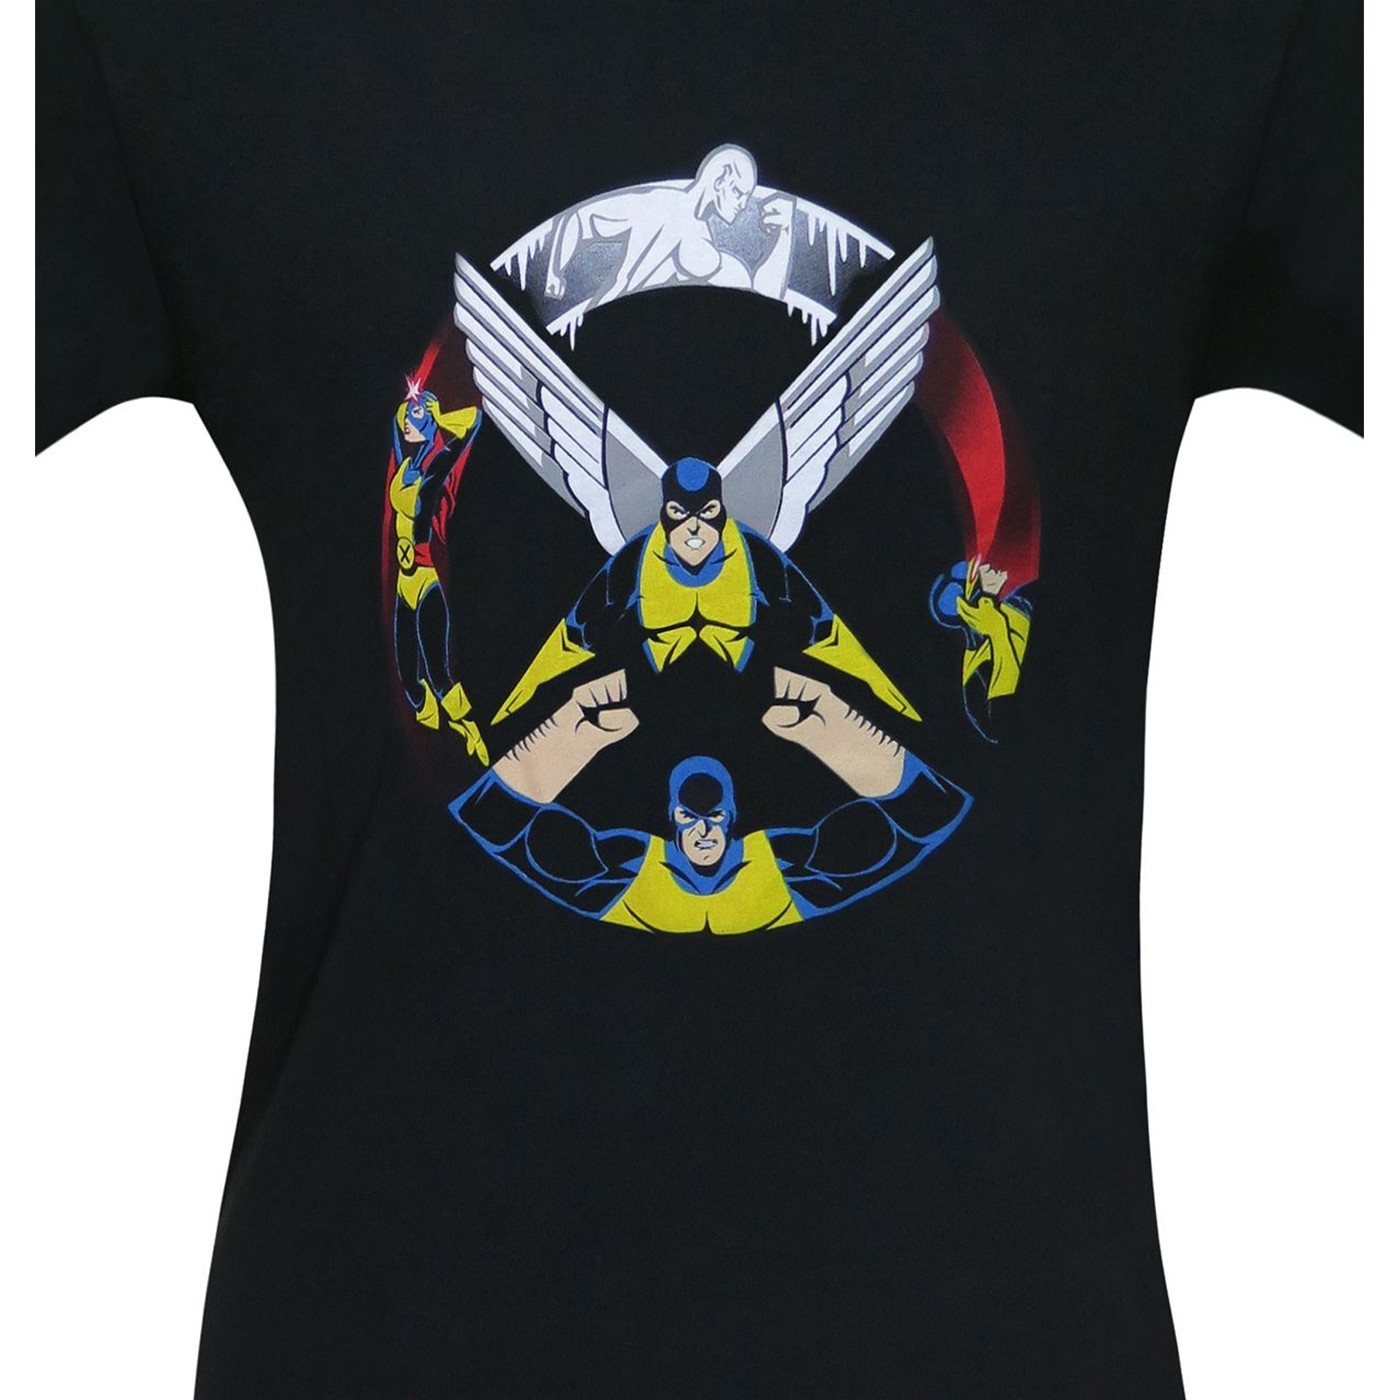 The Original X-Men Men's T-Shirt